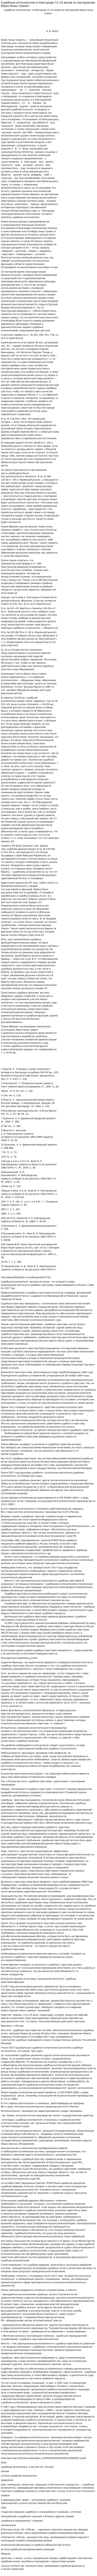 Судебные исполнители в Новгороде 11-15 веков по материалам берестяных грамот